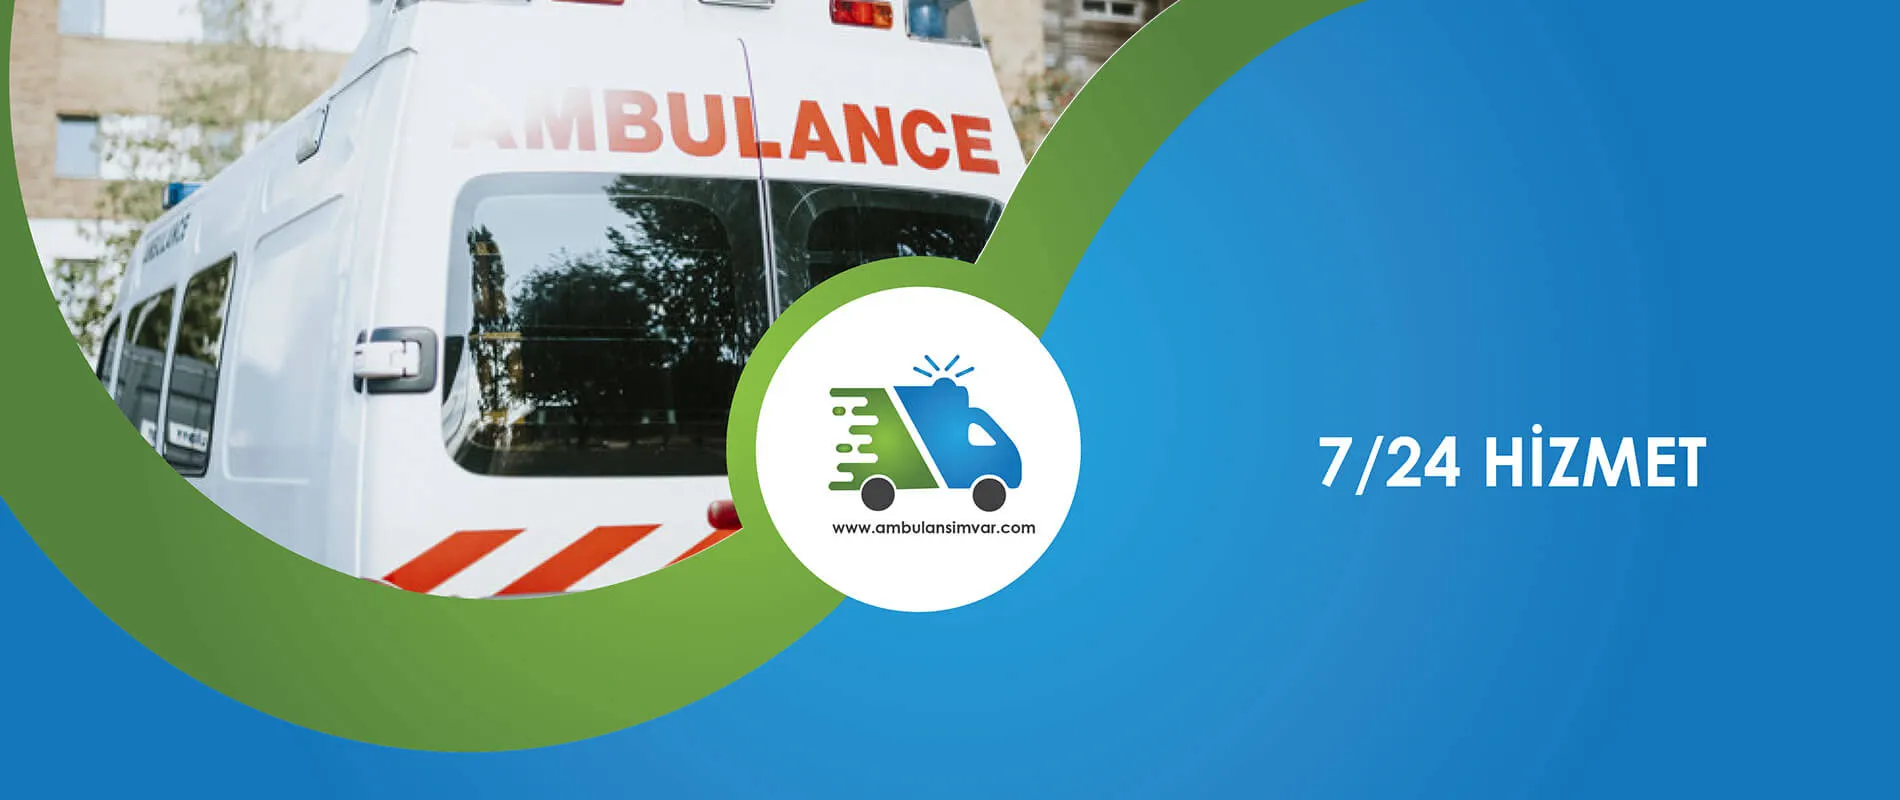 Özel Ambulans, ambulansımvar, istanbul özel ambulans, özel ambulans istanbul, acil ambulans